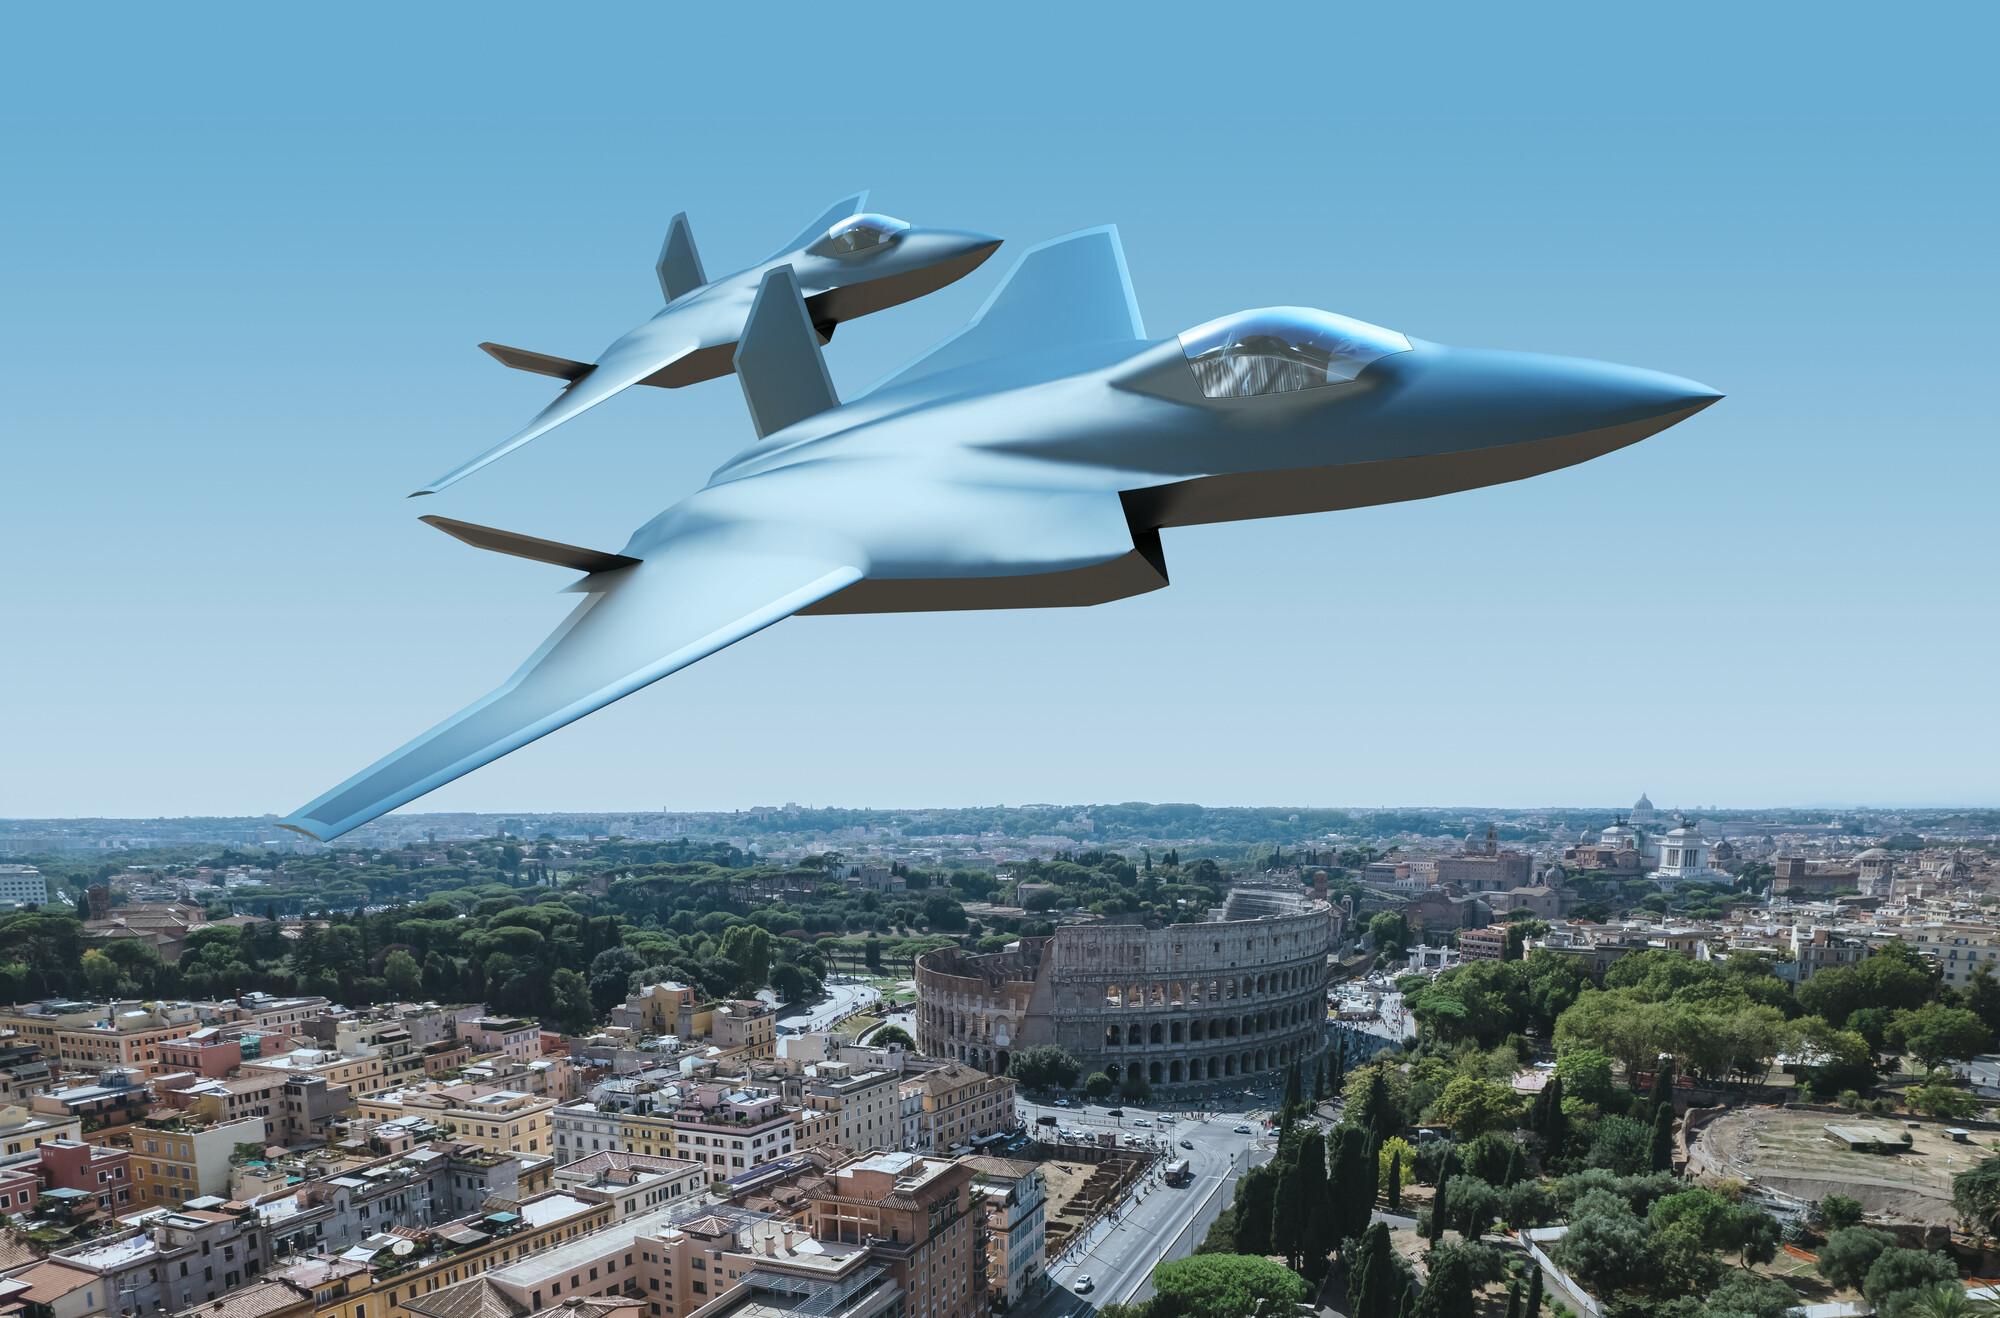 Italien wird bis 2037 mehr als 8 Mrd. Dollar investieren, um gemeinsam mit Großbritannien und Japan ein Kampfflugzeug der sechsten Generation zu entwickeln